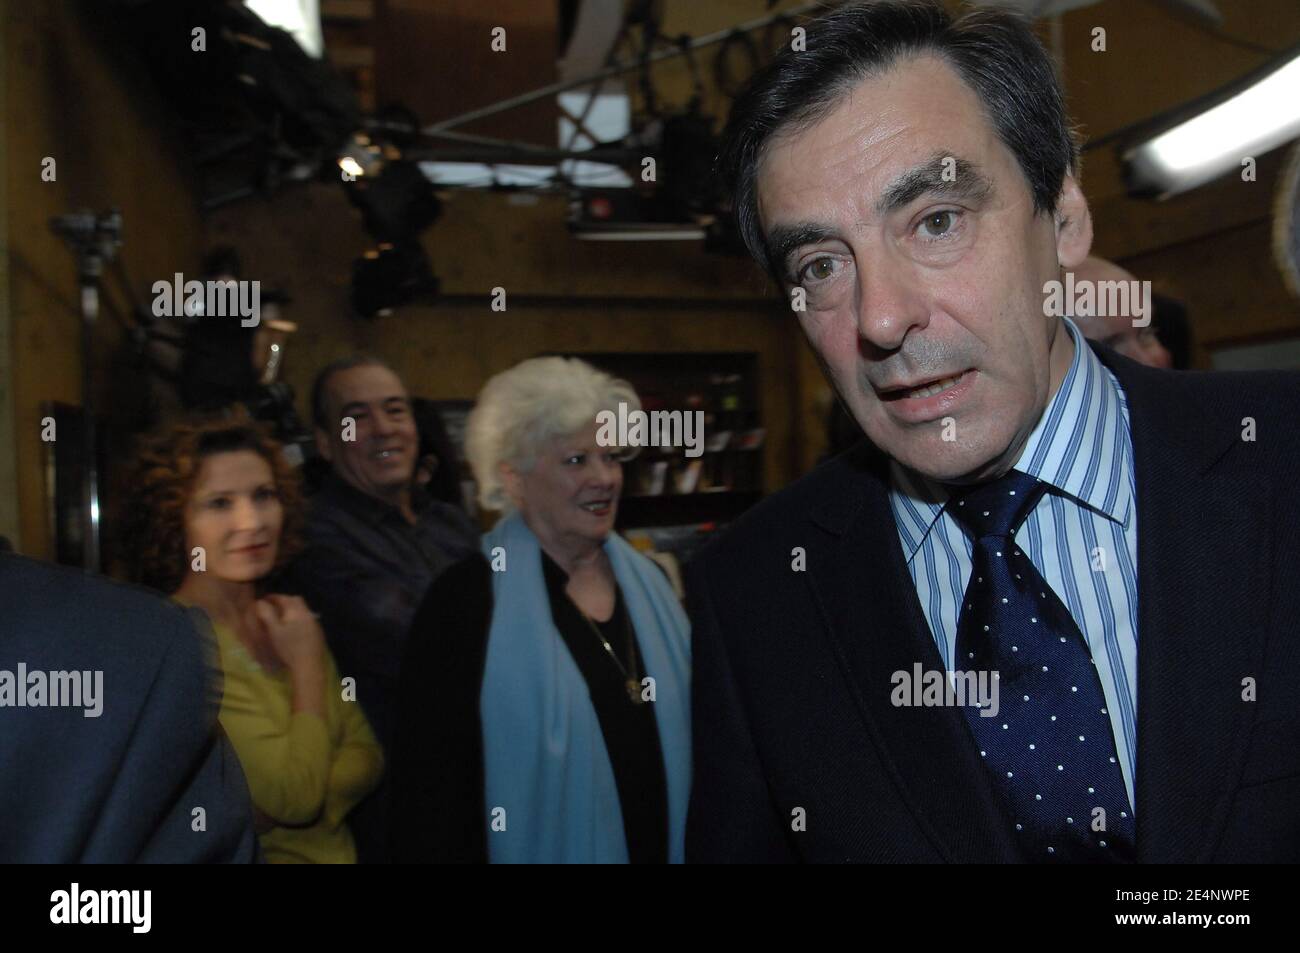 Il primo ministro Francois Fillon visita il set della serie televisiva francese "Plus belle la vie" a Marsiglia, in Francia, il 14 gennaio 2008. Foto di Eric Tschaen/piscina/ABACAPRESS.COM Foto Stock